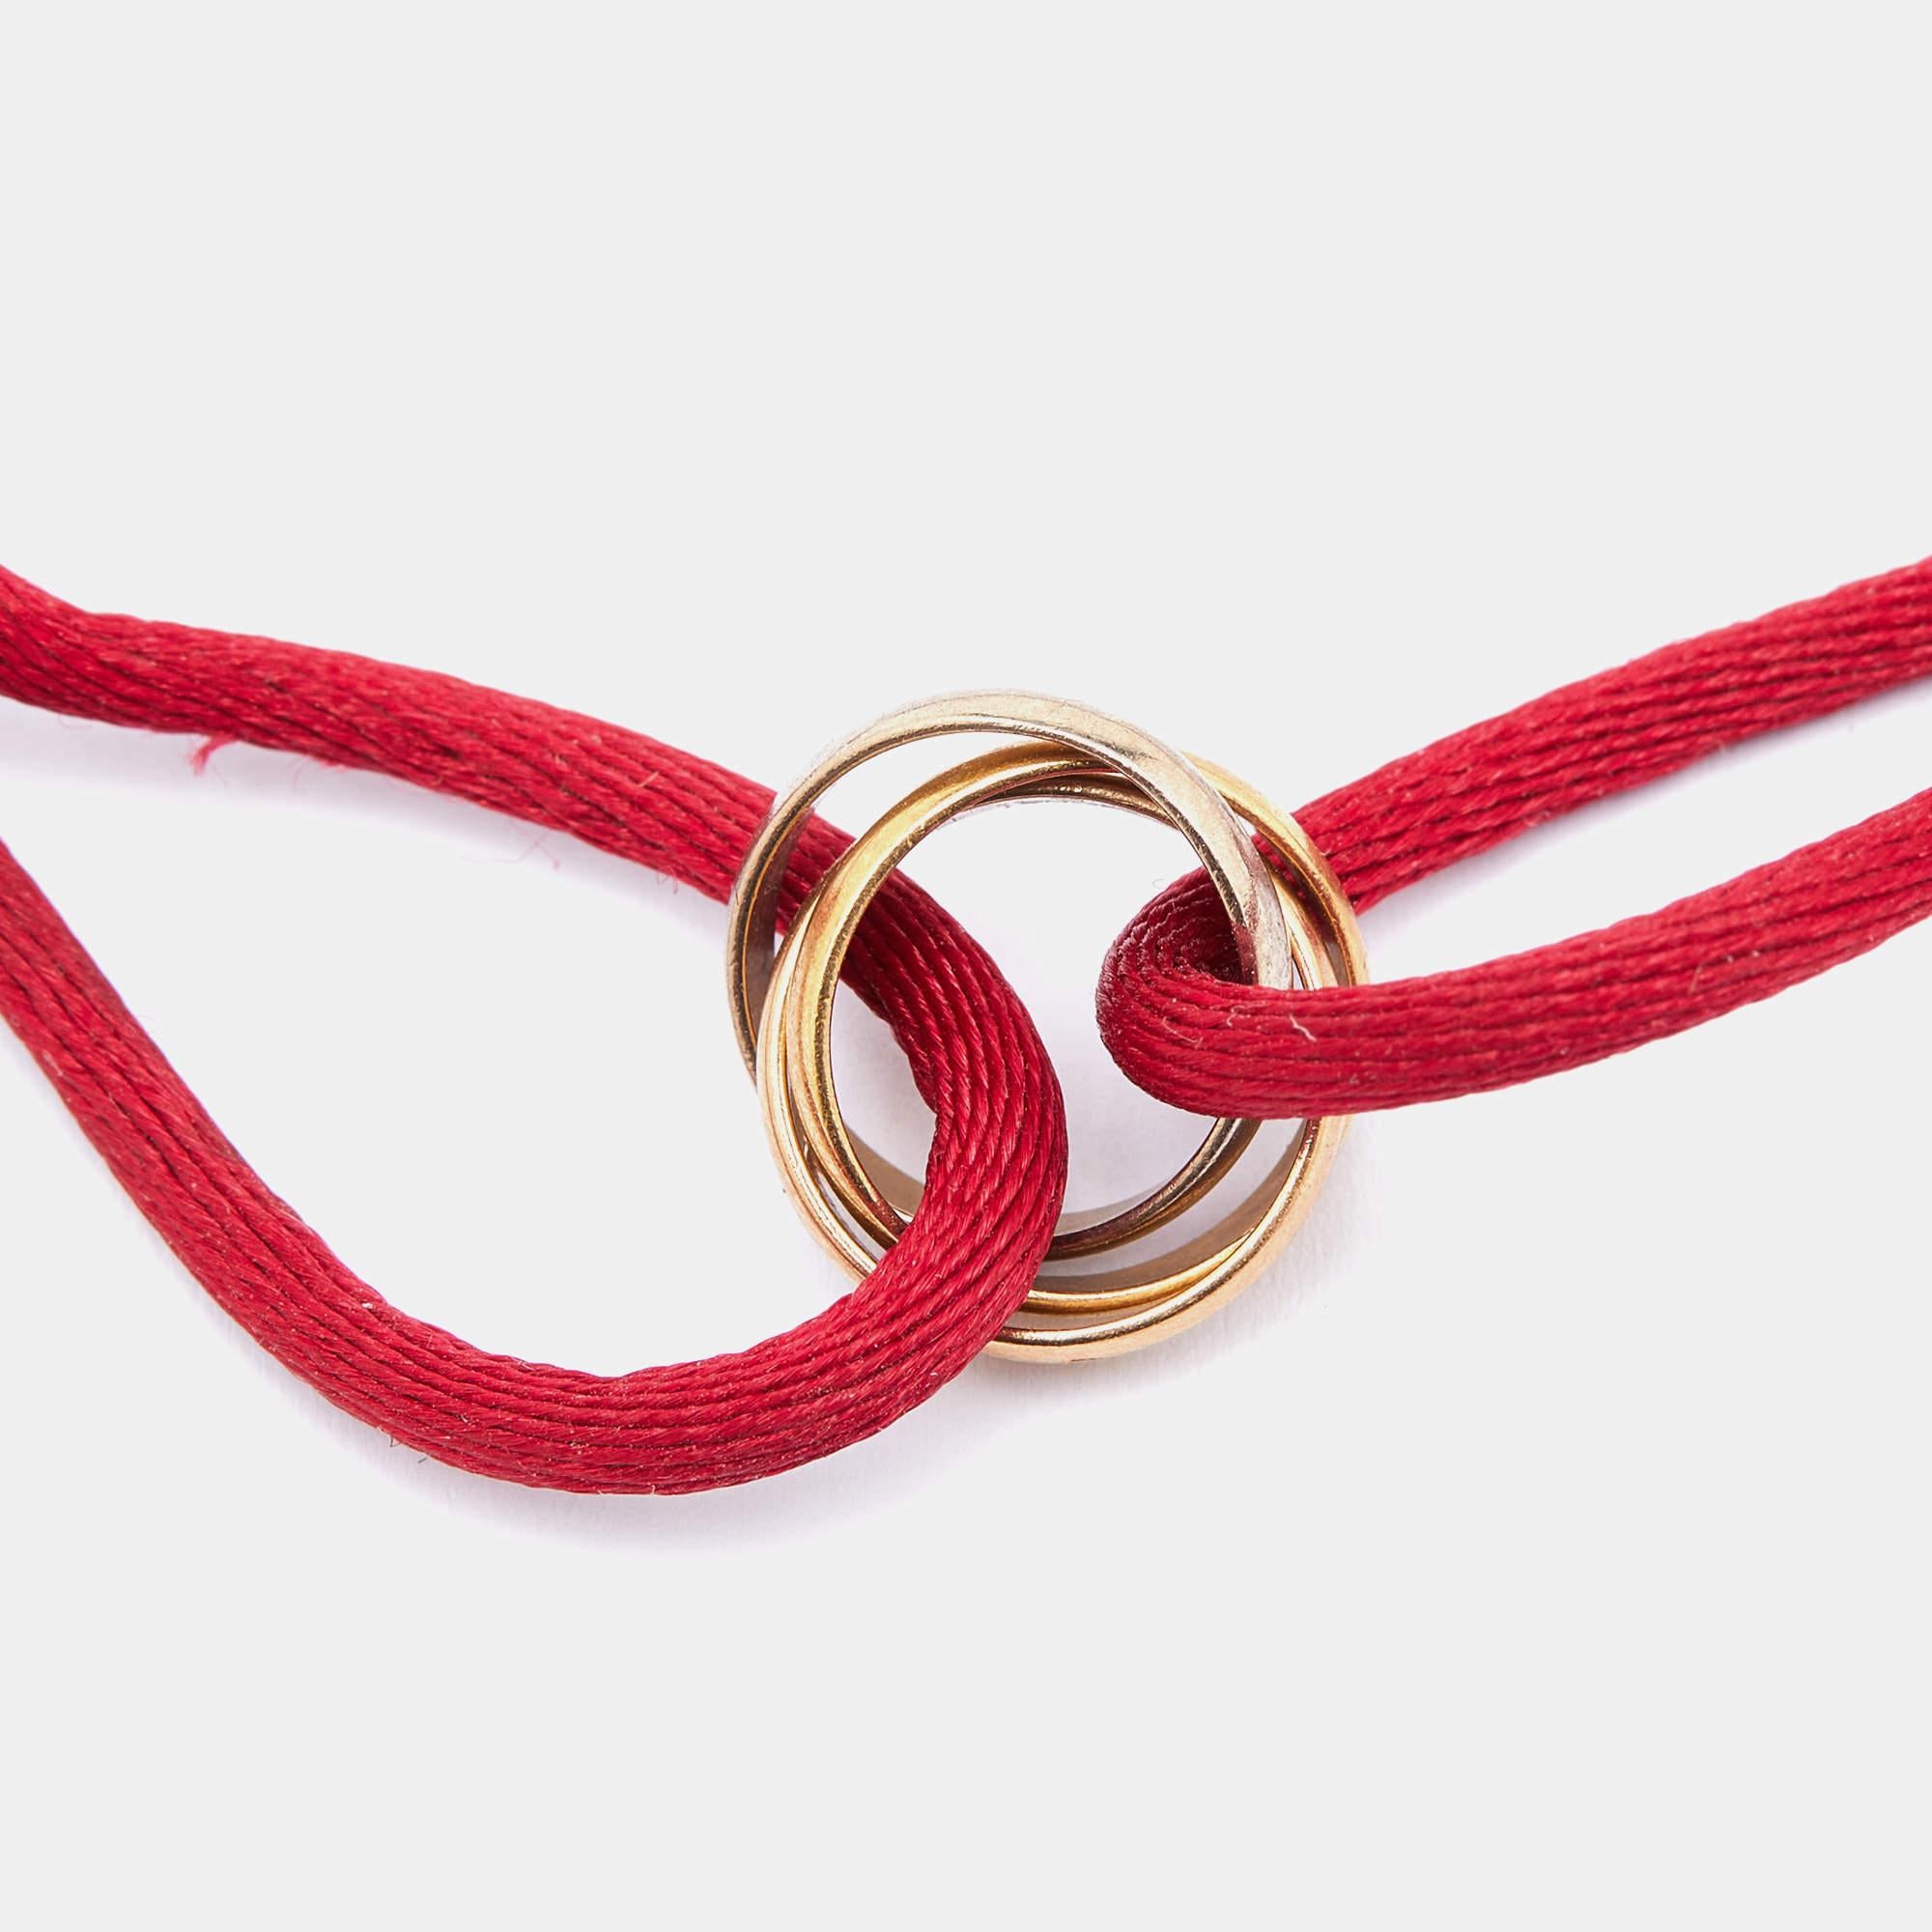 cartier red string bracelet